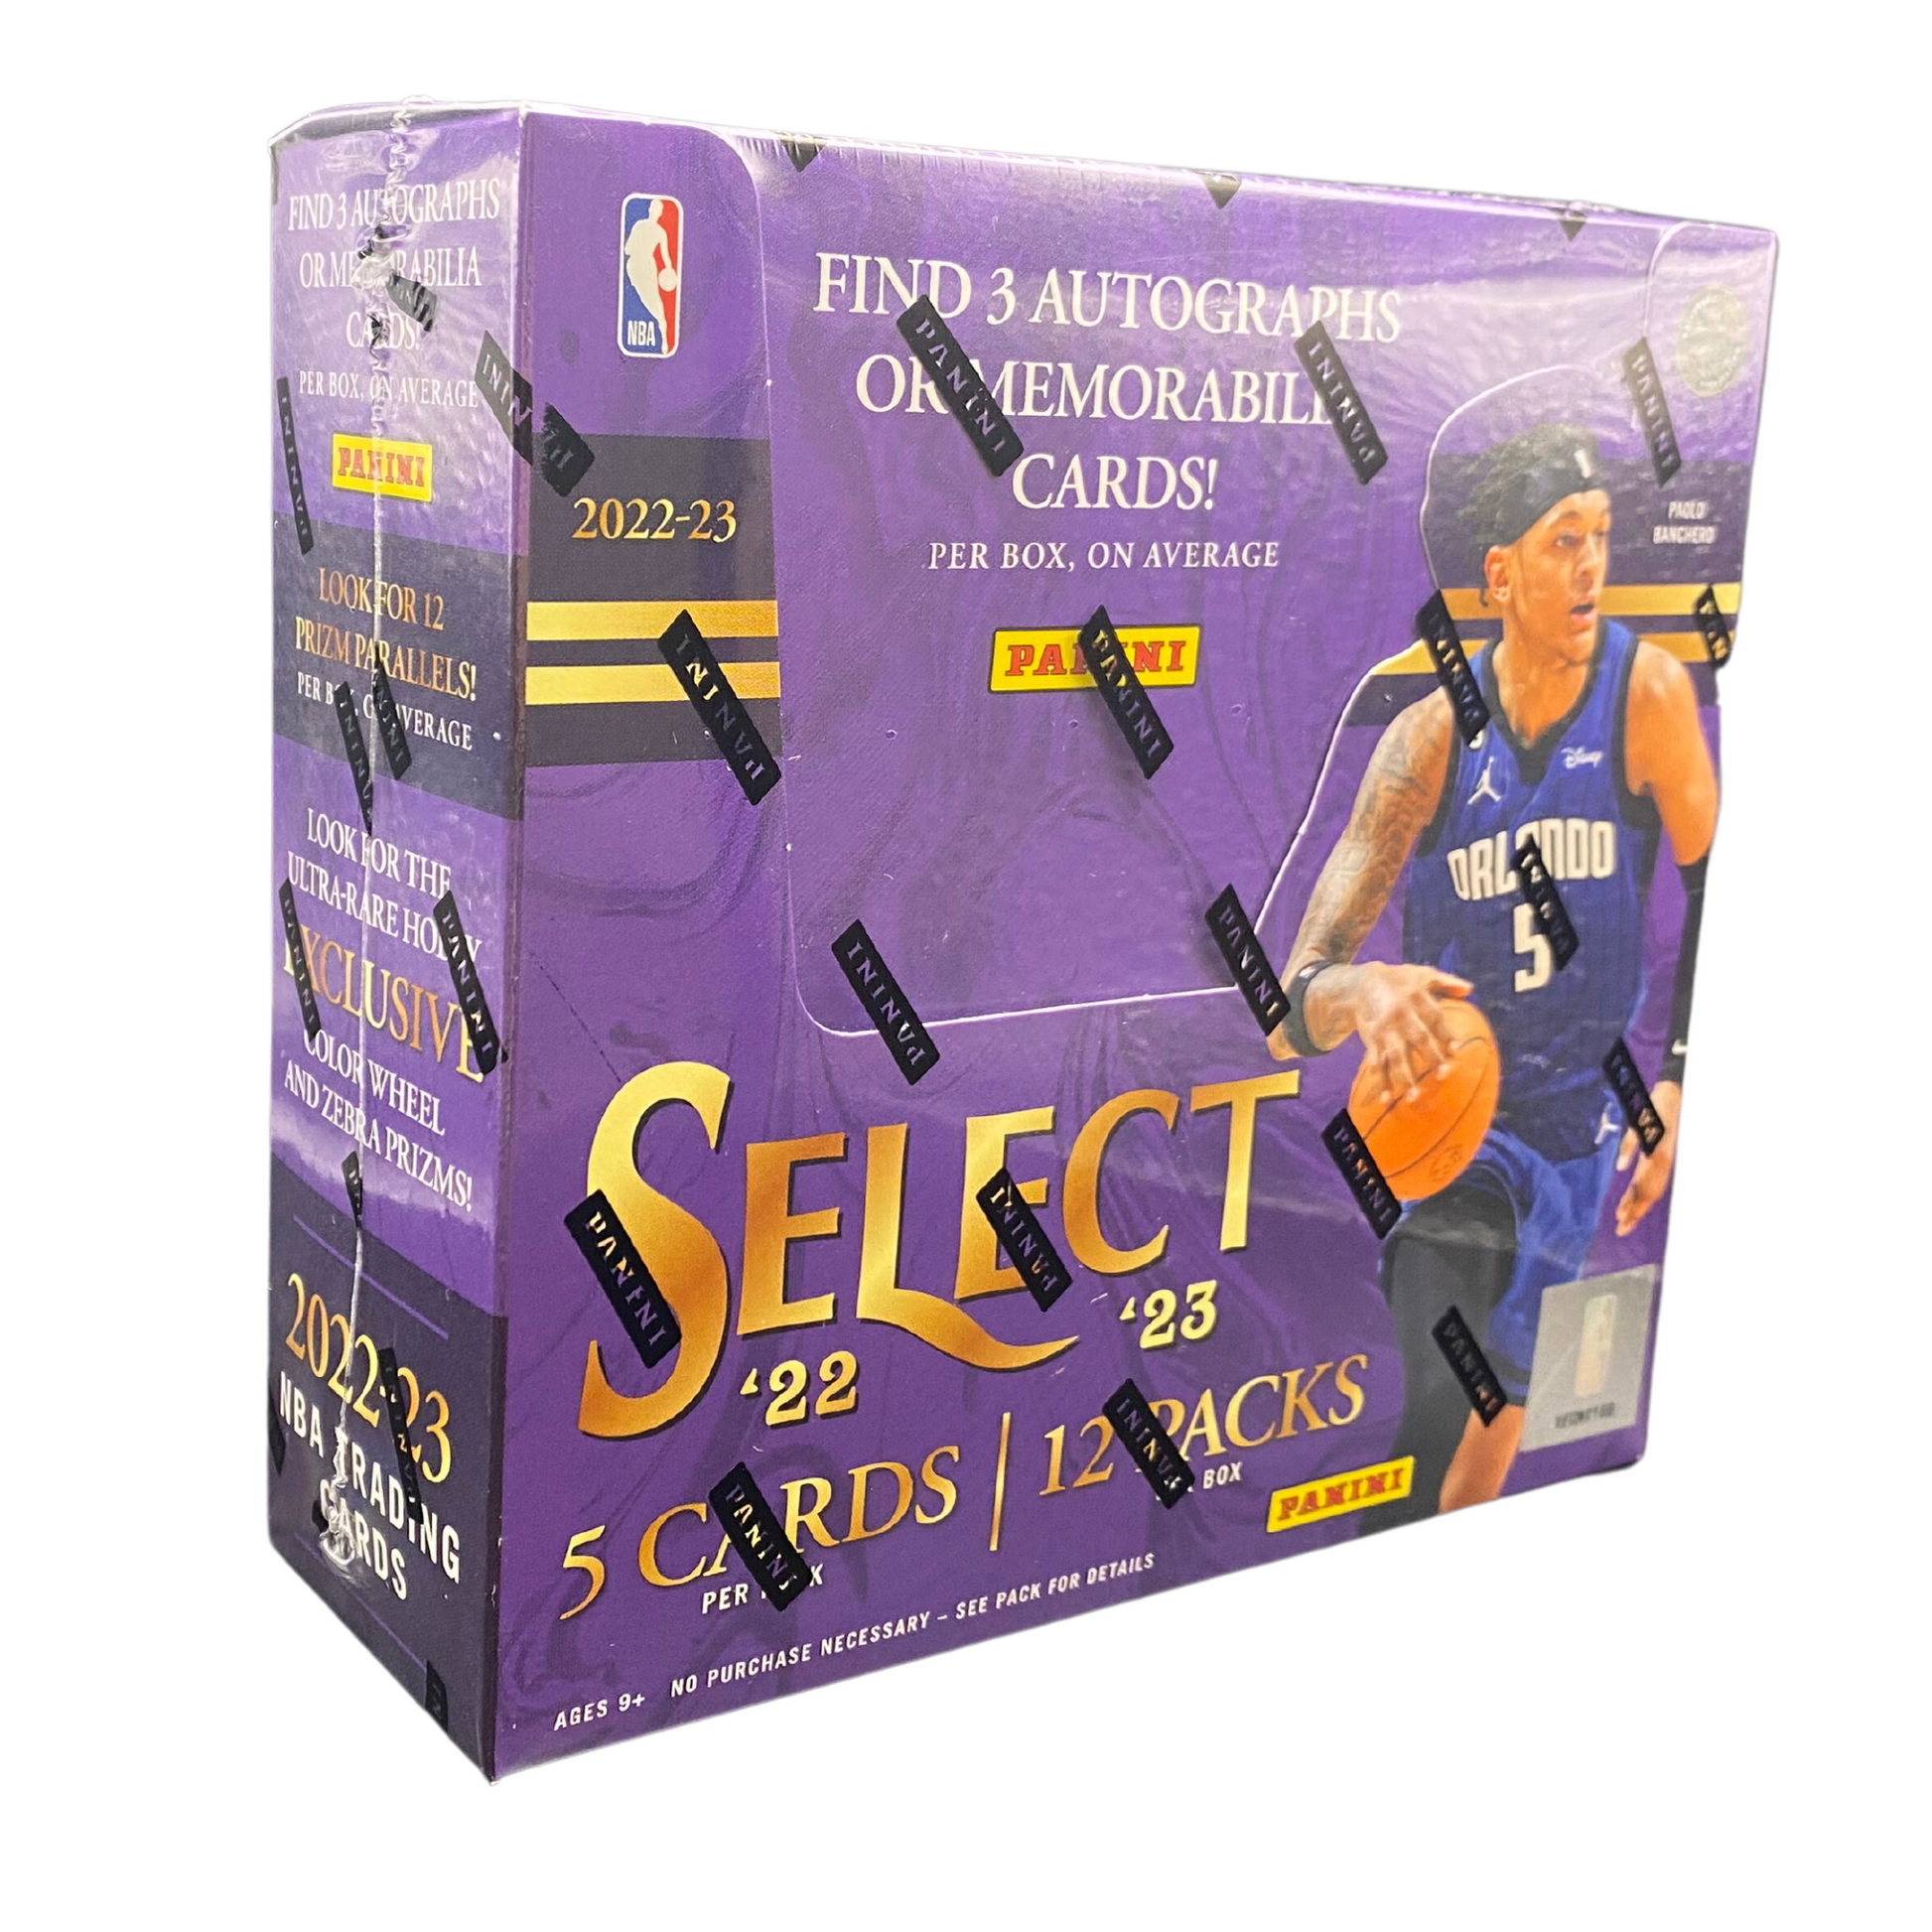 2022/23 Panini Select Basketball Hobby Box